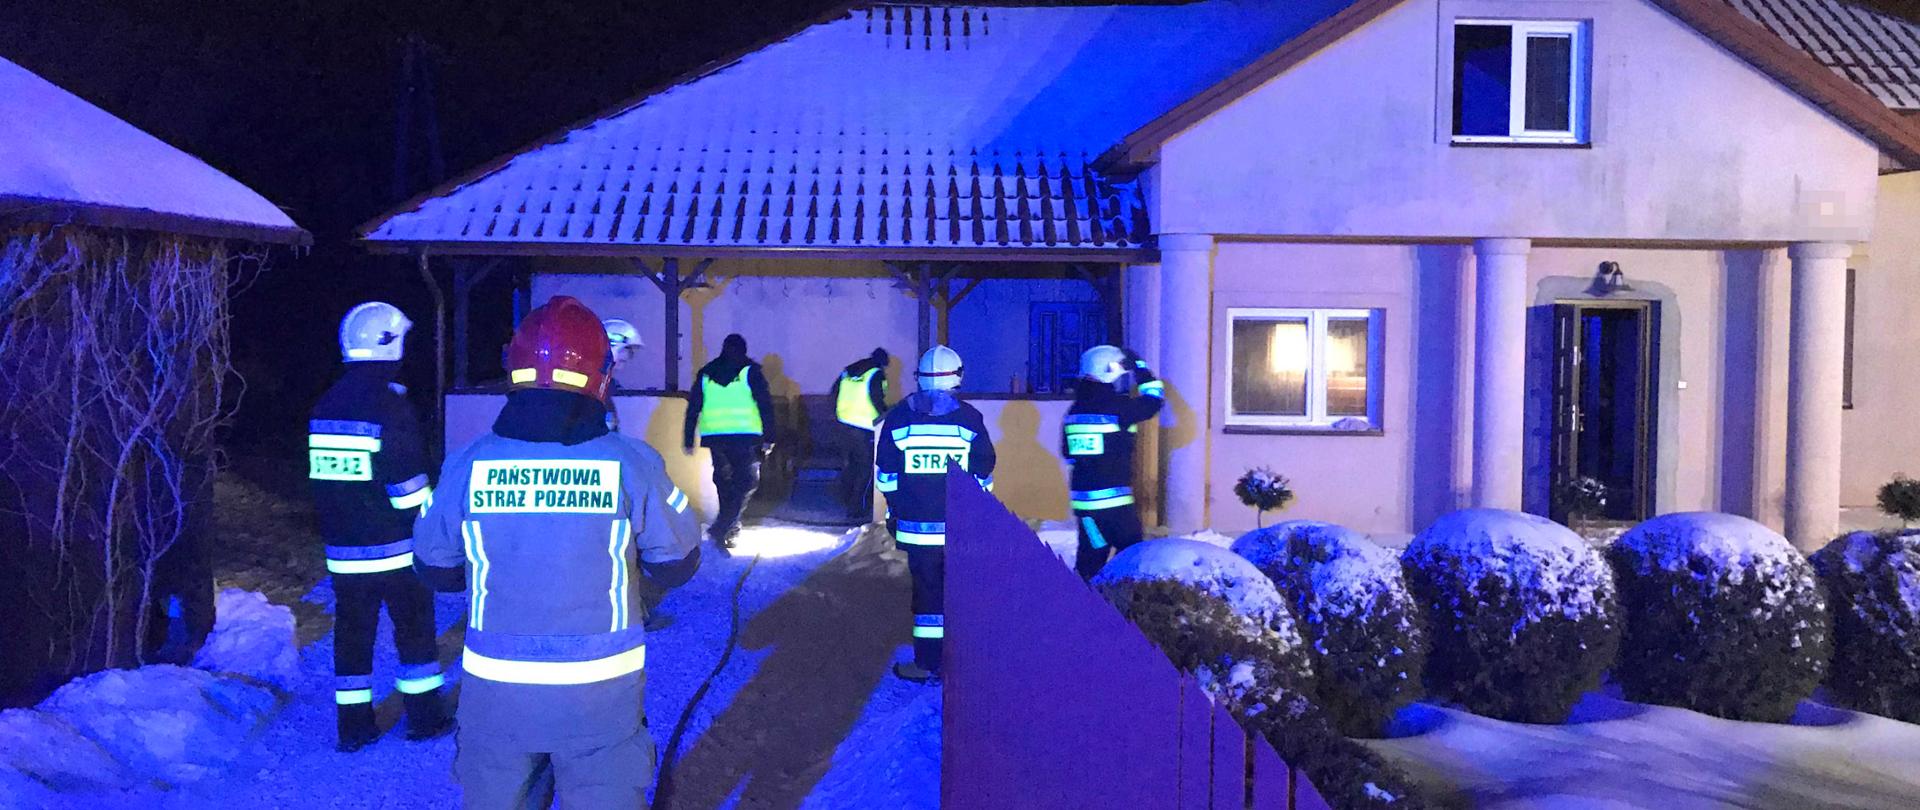 Zdjęcie zrobione w nocy. Zdjęcie przedstawia budynek mieszkalny, w którym pali się pomieszczenie kuchni. Obok domu stoi na ośnieżonym podjeździe pięciu strażaków i dwóch policjantów. 